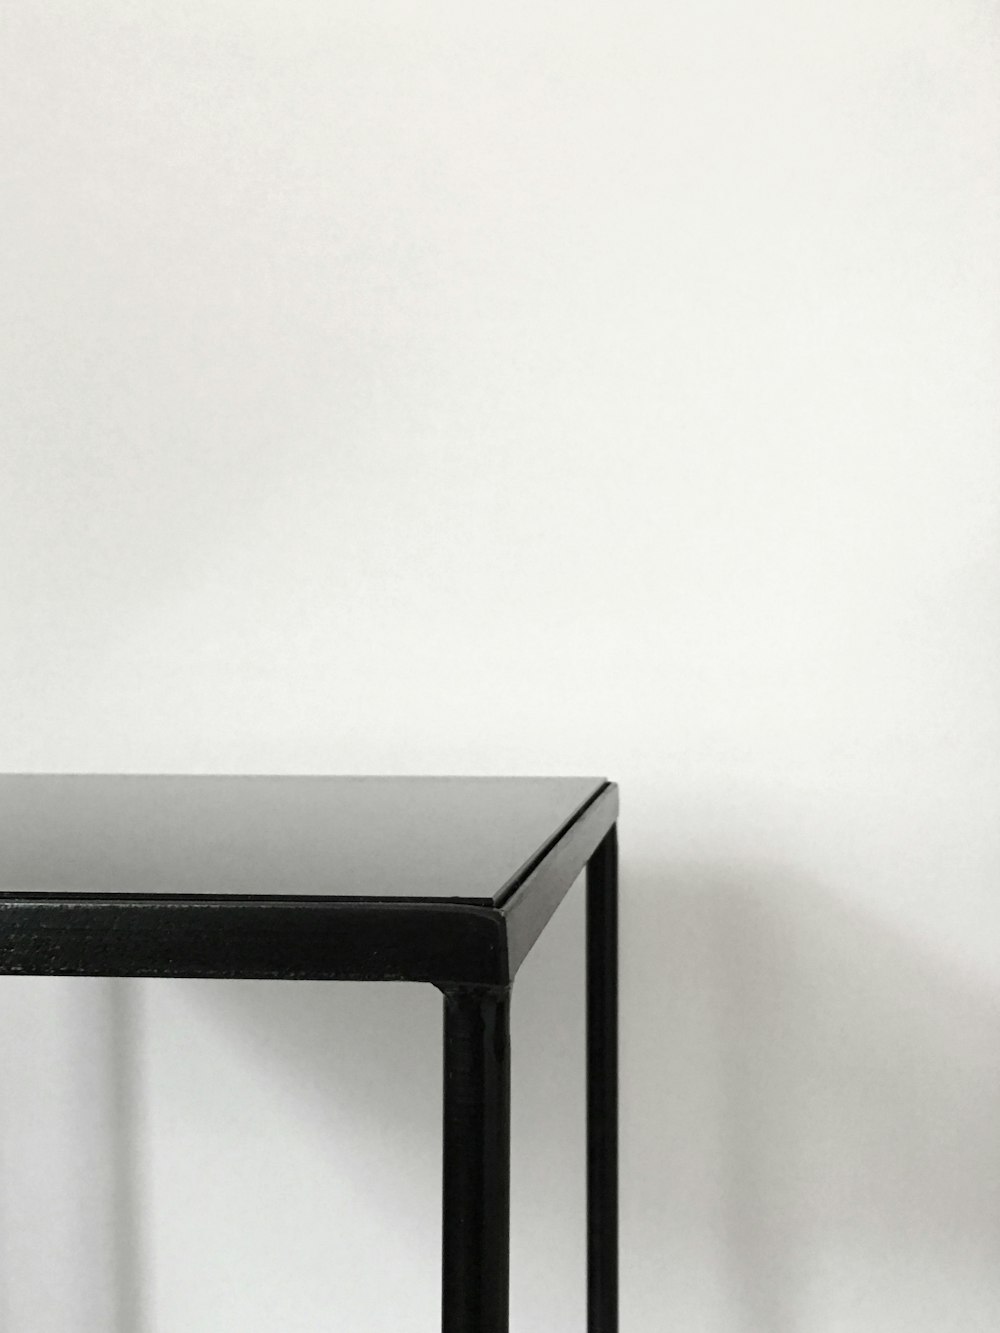 tavolo in metallo nero vicino al muro bianco ansante